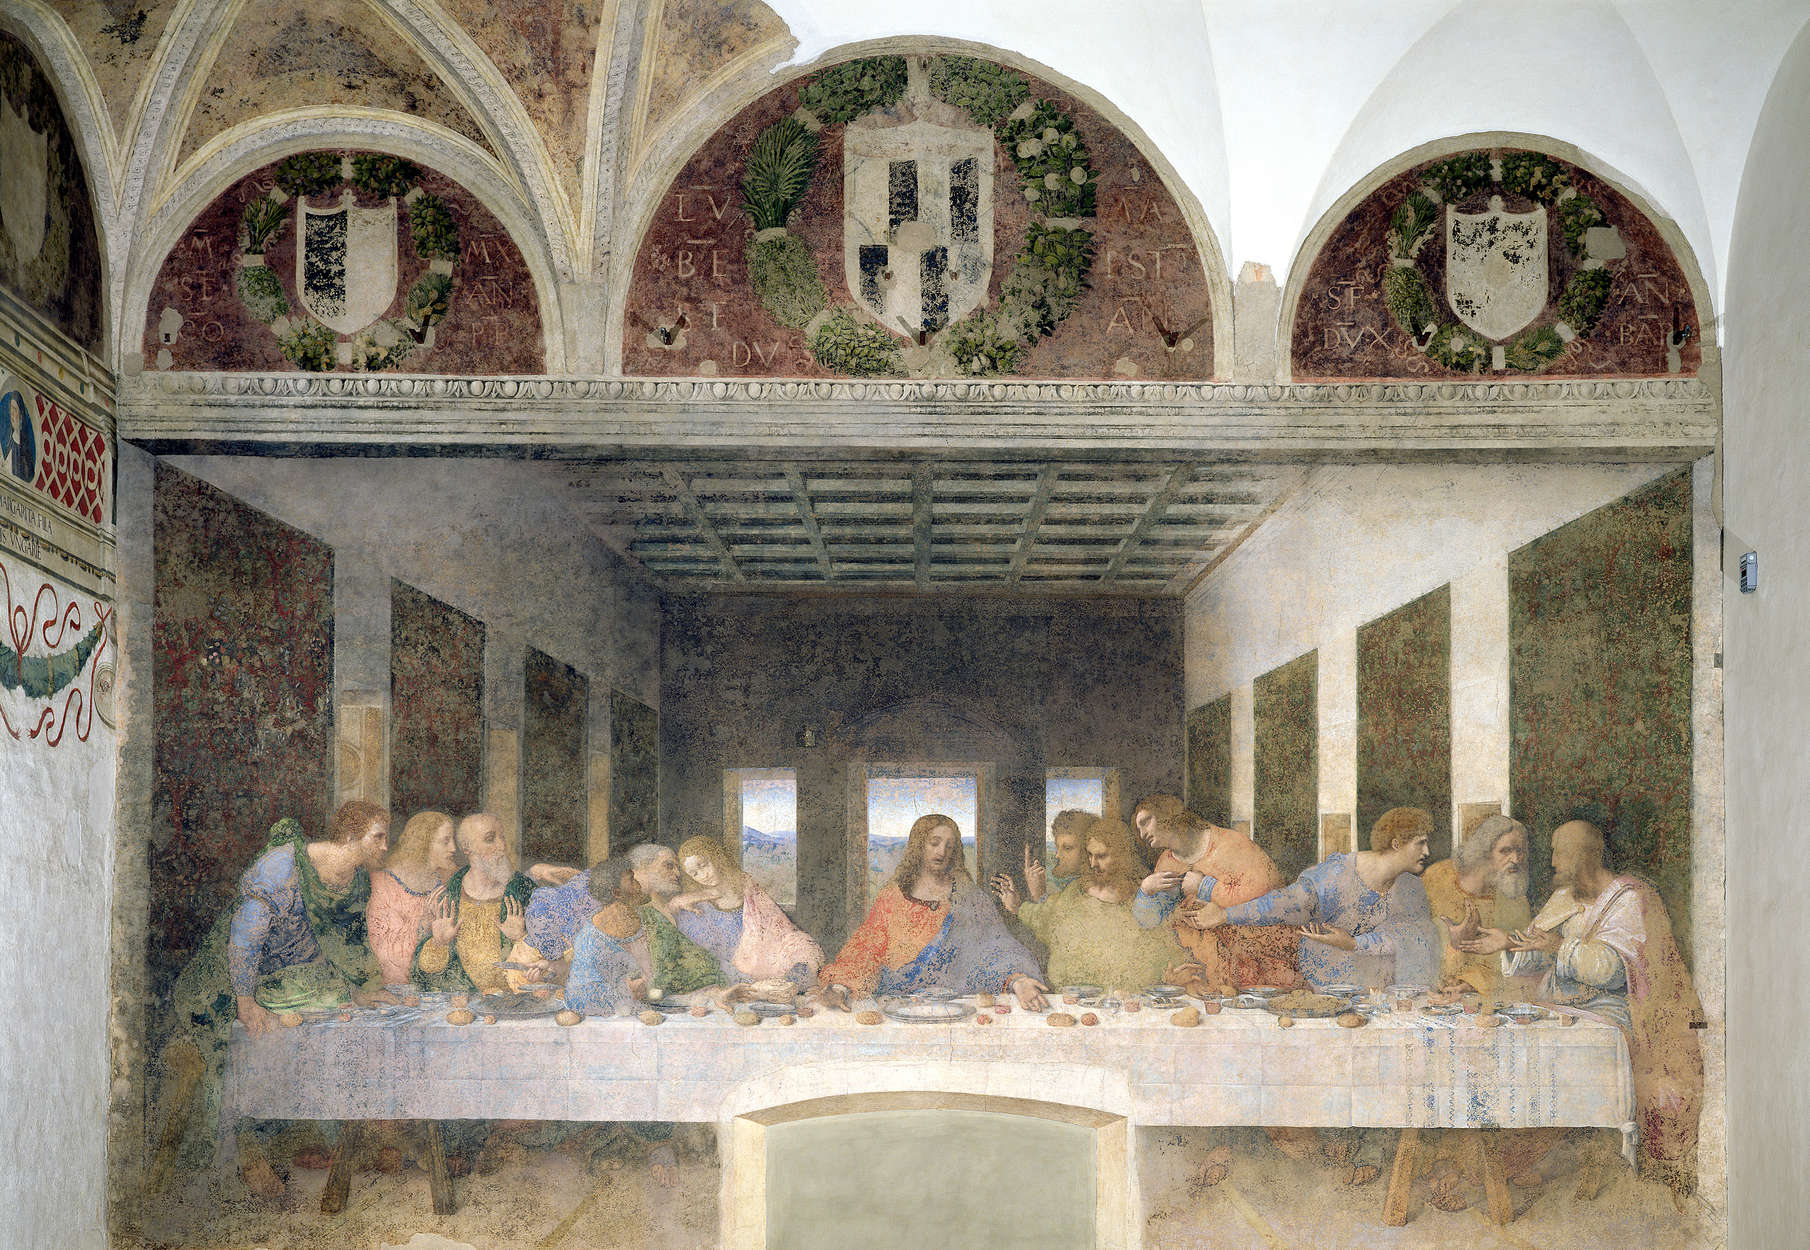             Het Laatste Avondmaal" muurschildering van Leonardo da Vinci
        